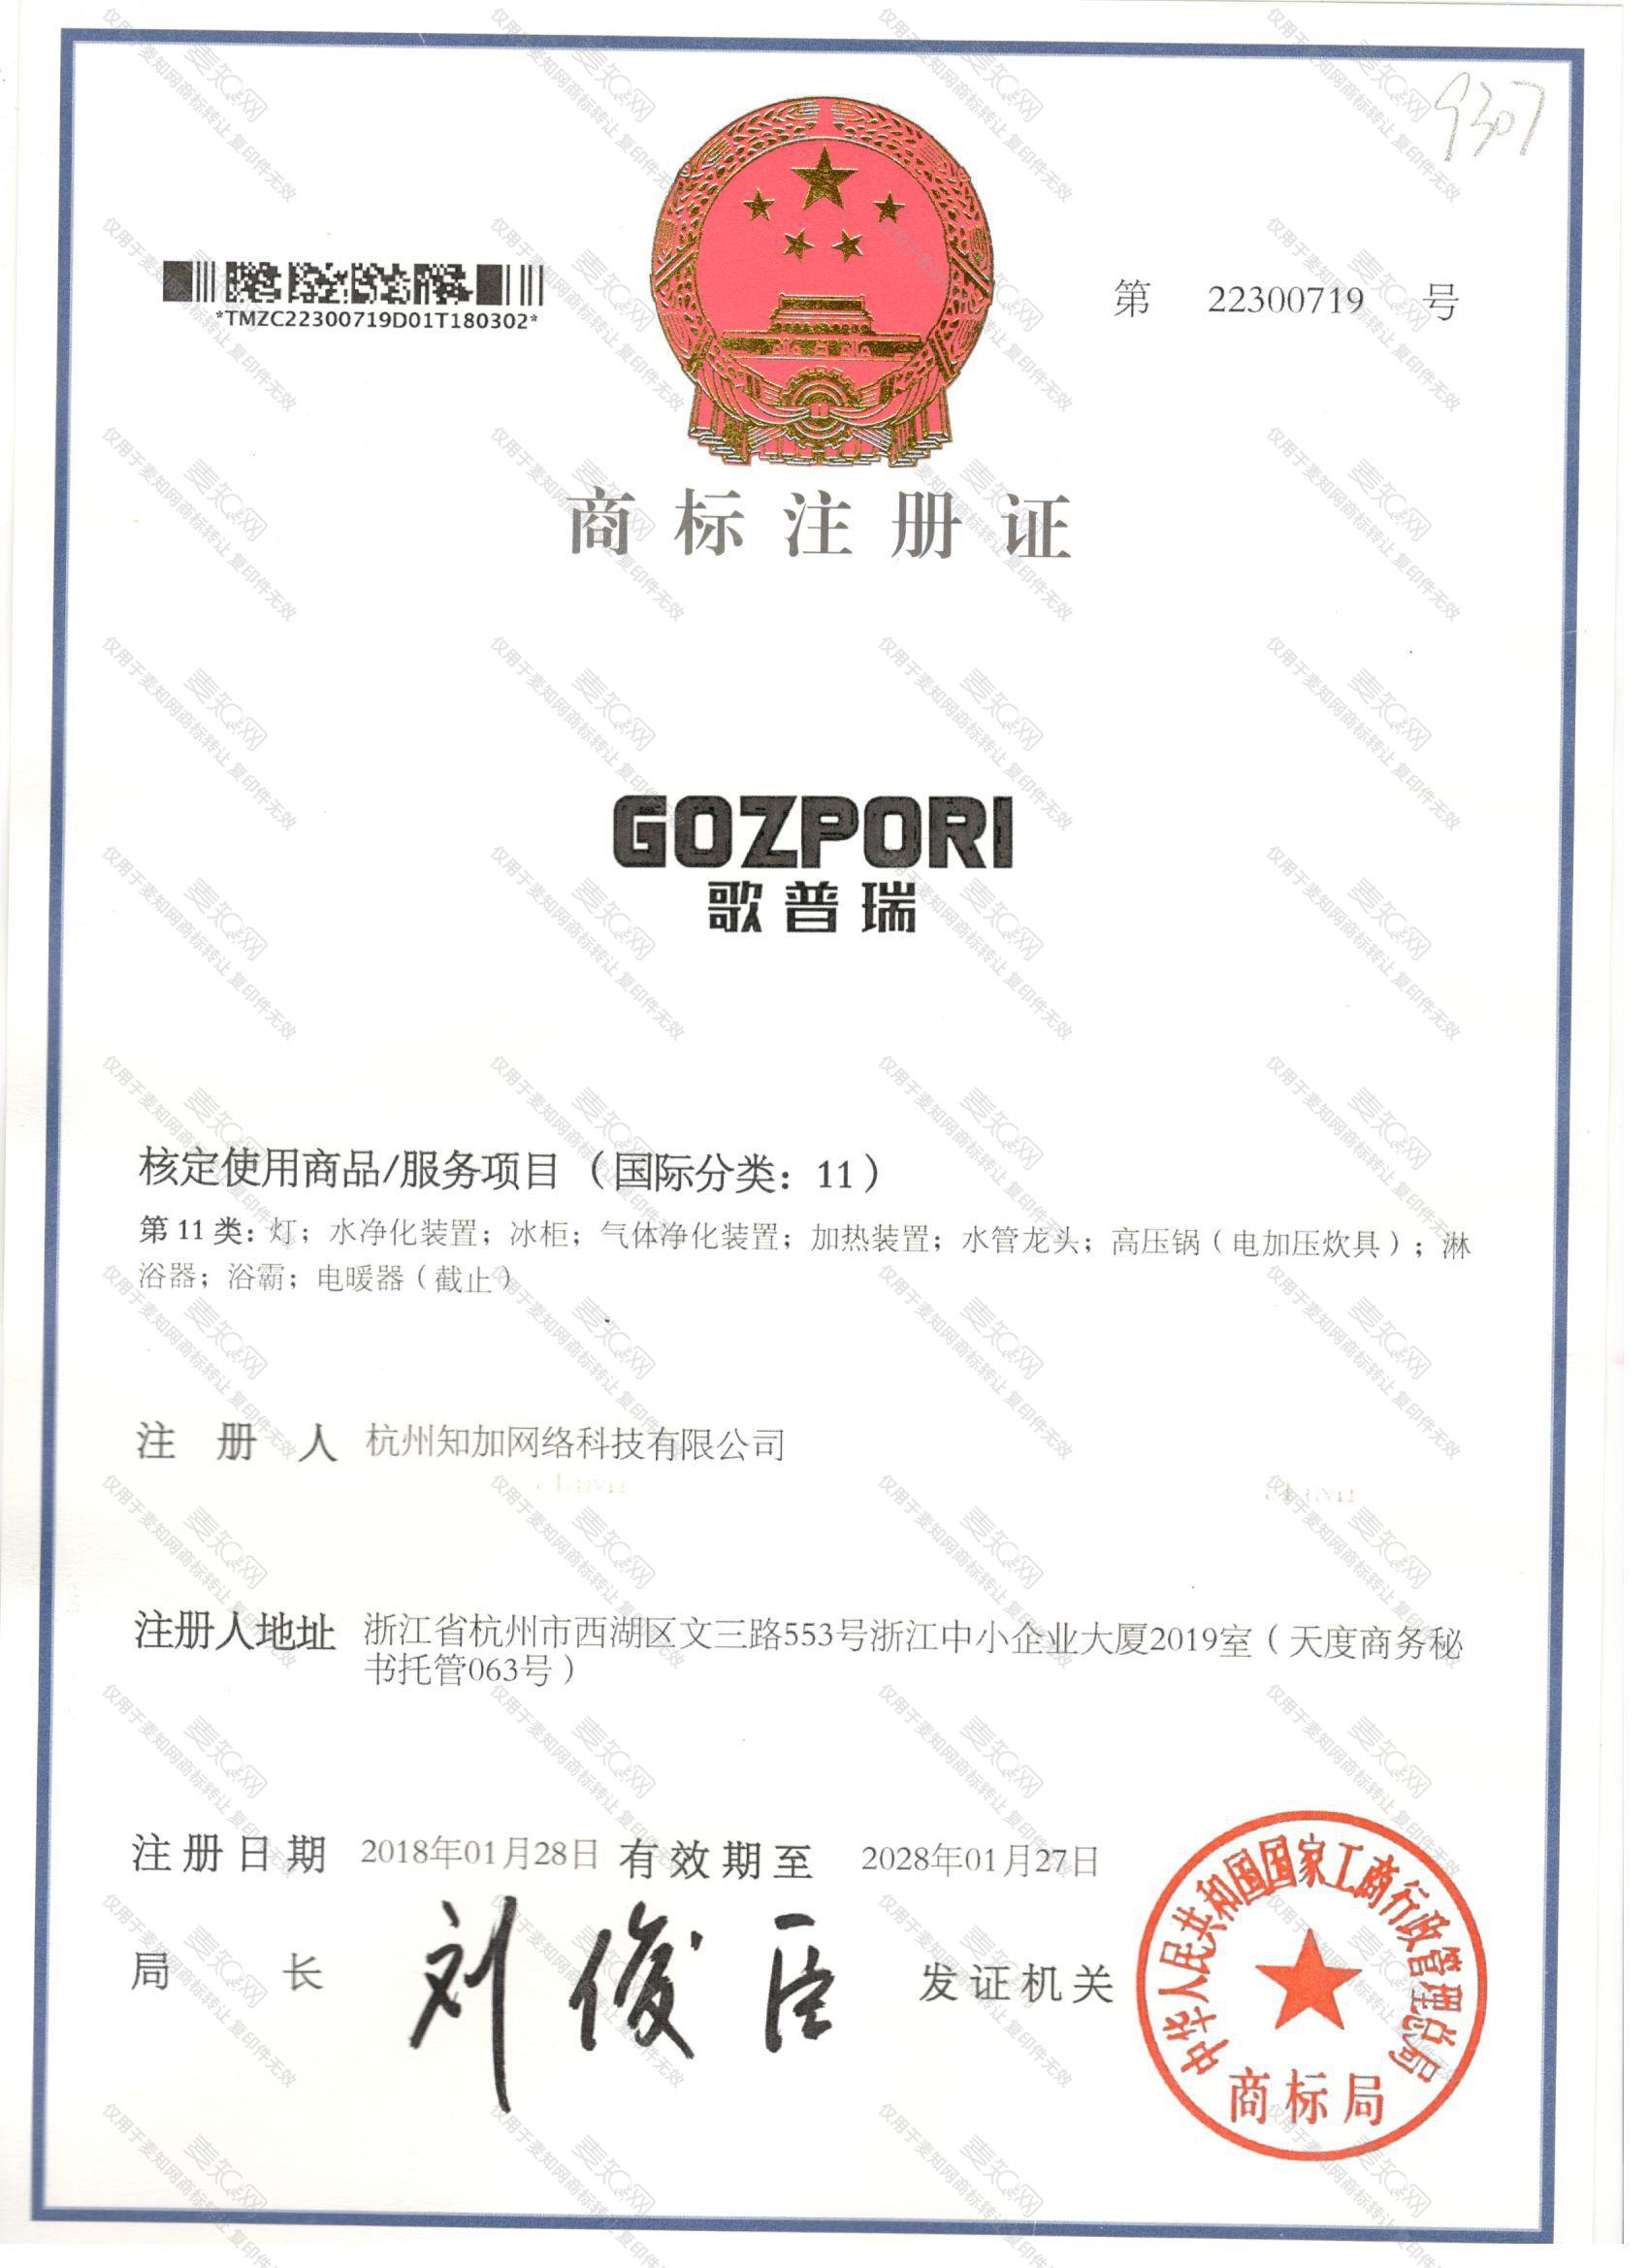 歌普瑞 GOZPORI注册证